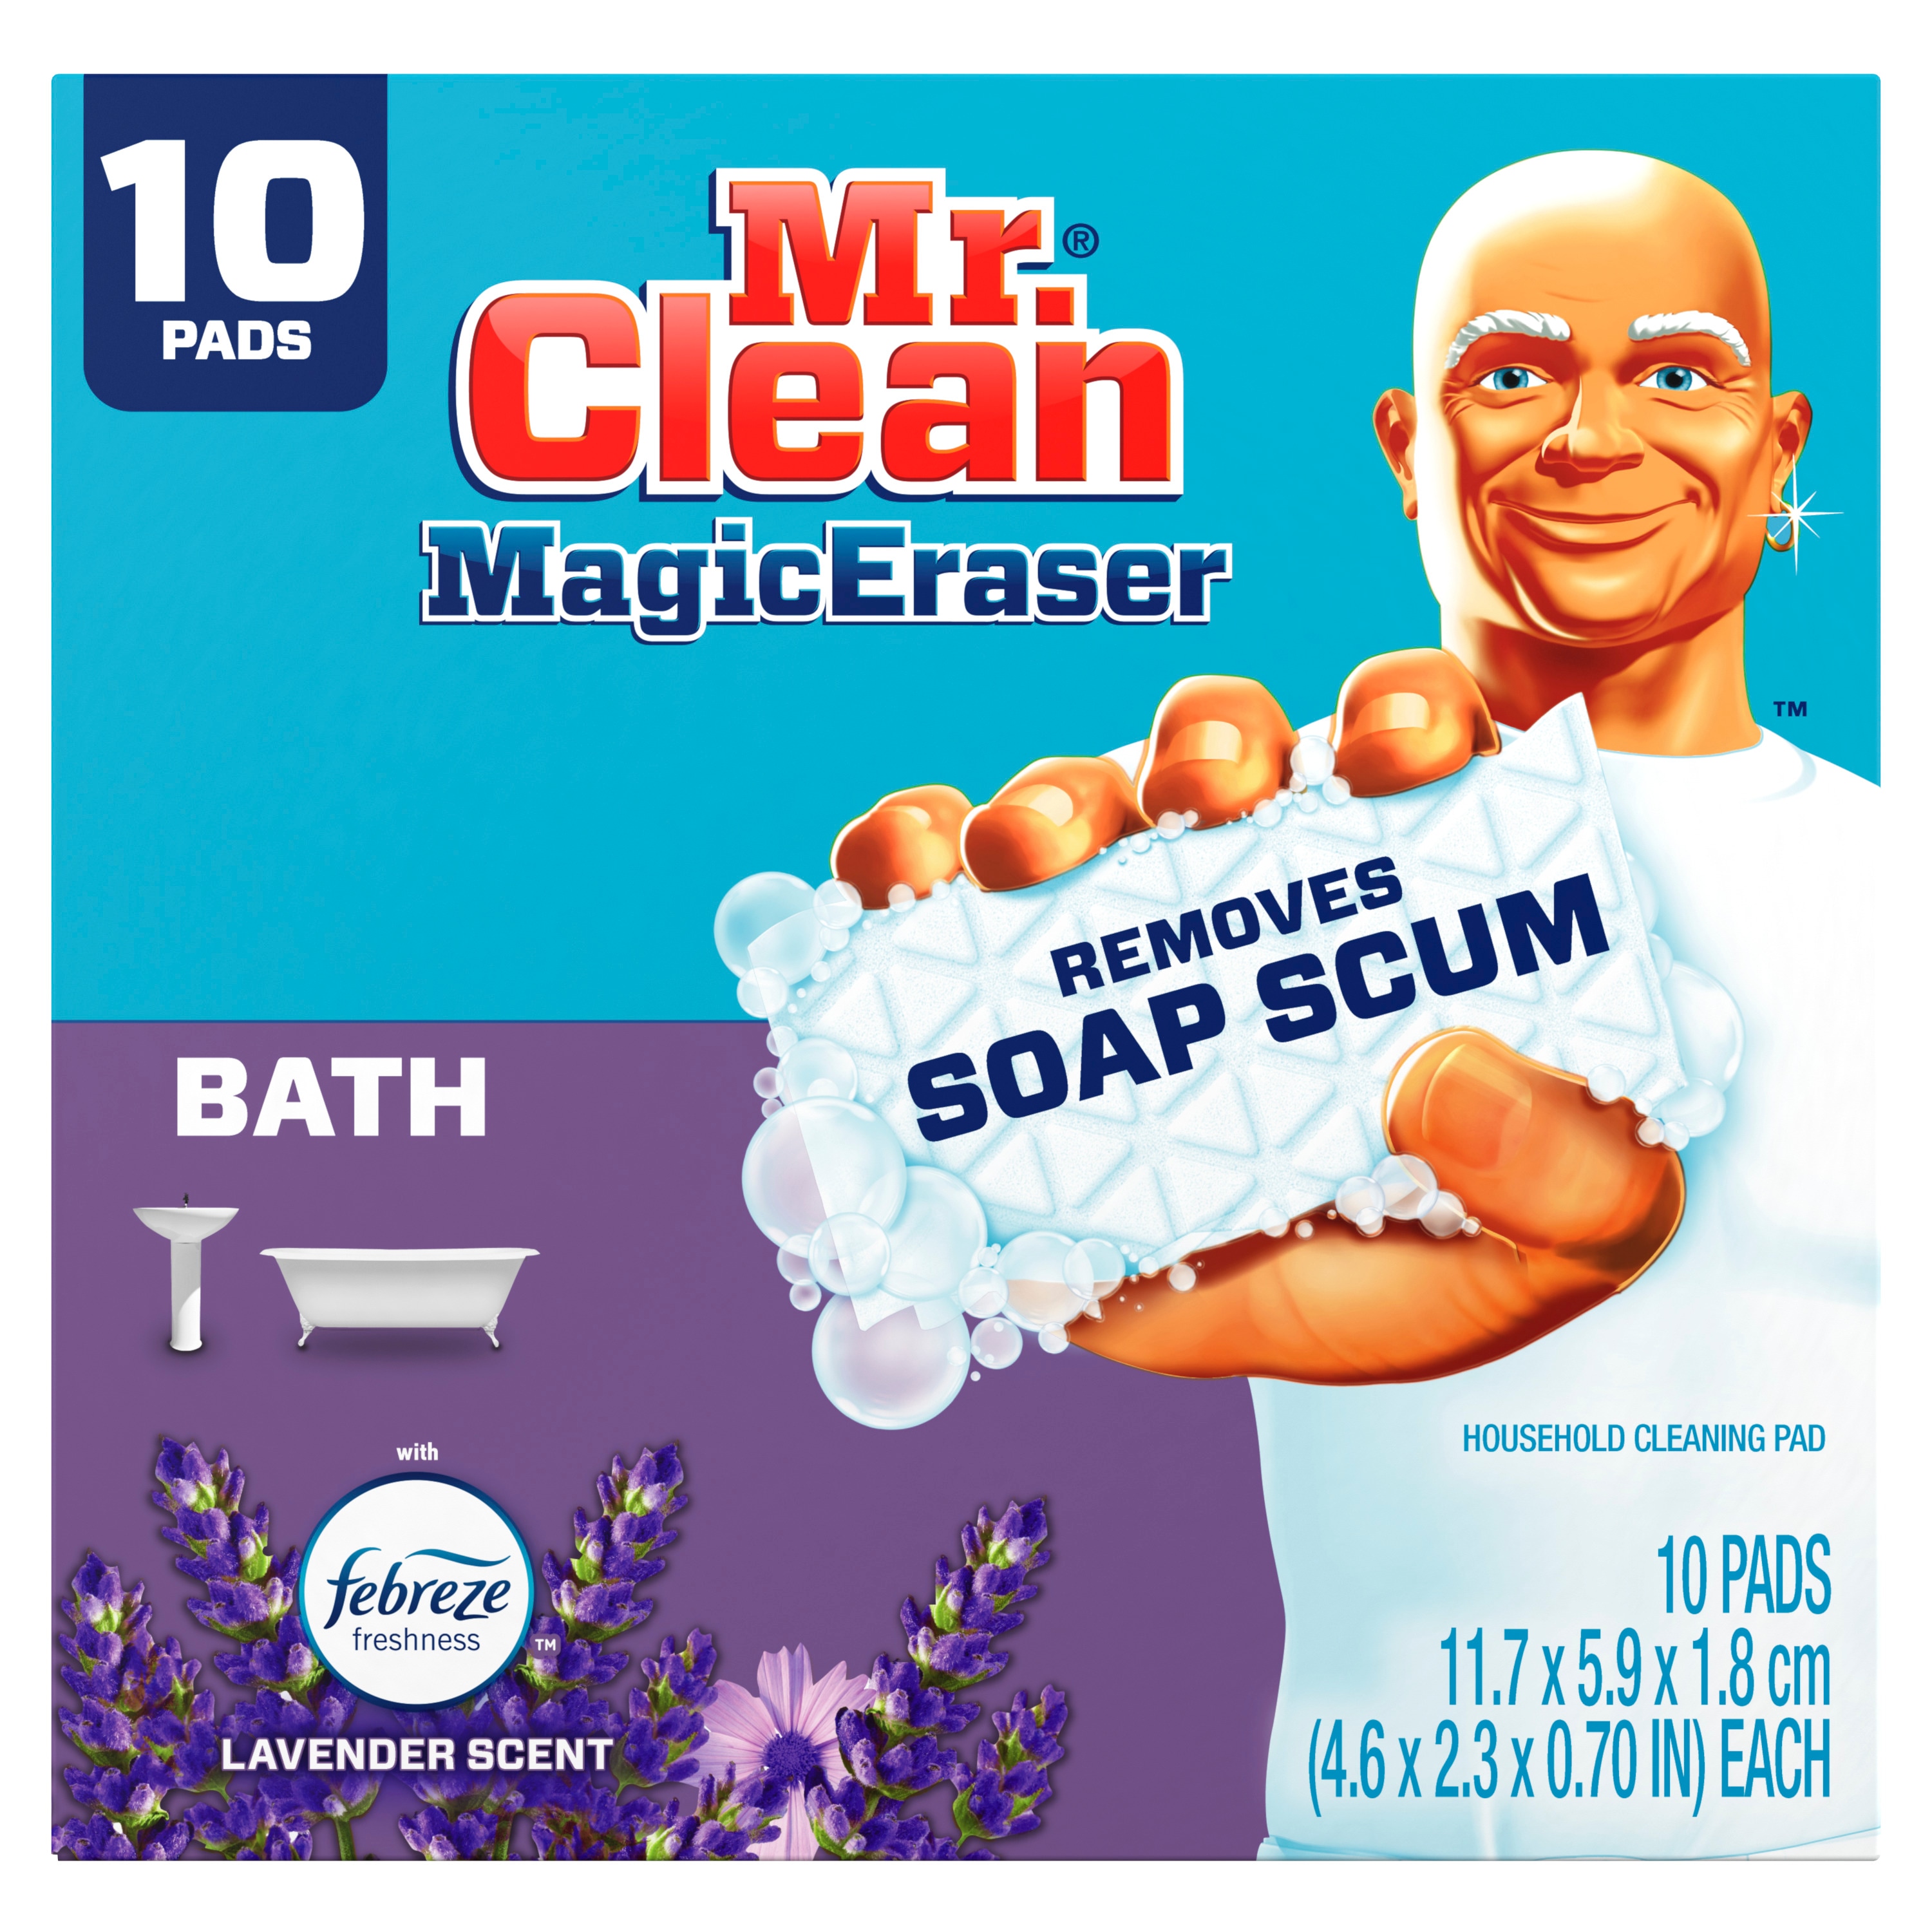 Mr. Clean Magic Eraser Bath sẽ giúp bạn làm sạch phòng tắm một cách nhanh chóng và hiệu quả. Hãy xem những hình ảnh để biết thêm về liệu pháp mới này và tận hưởng sự thoải mái khi sử dụng.